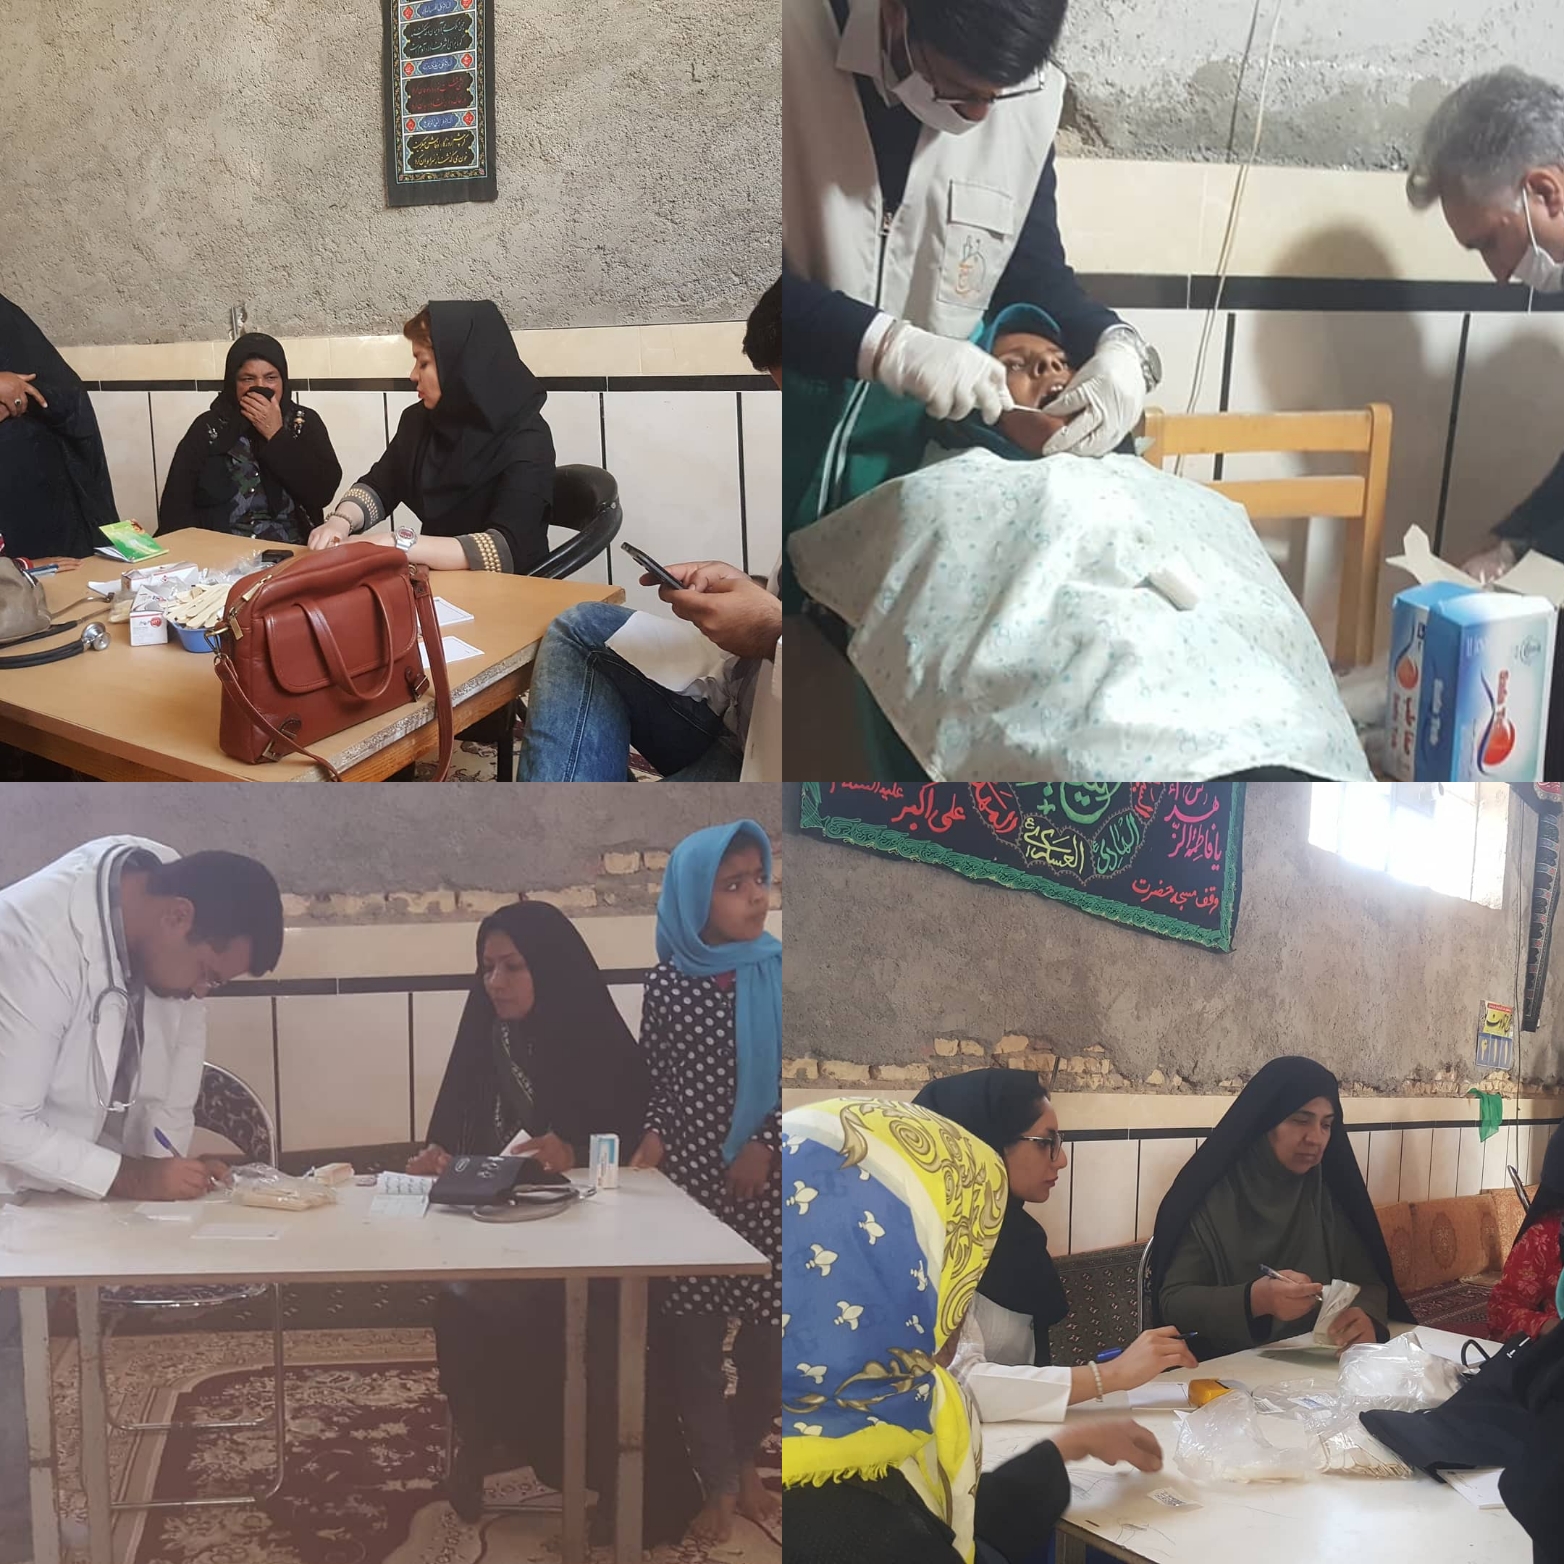 پزشکان جهادی خادمیار سلامت رضوی، در روستای شیخ آباد زابل به مداوای بیماران پرداختند